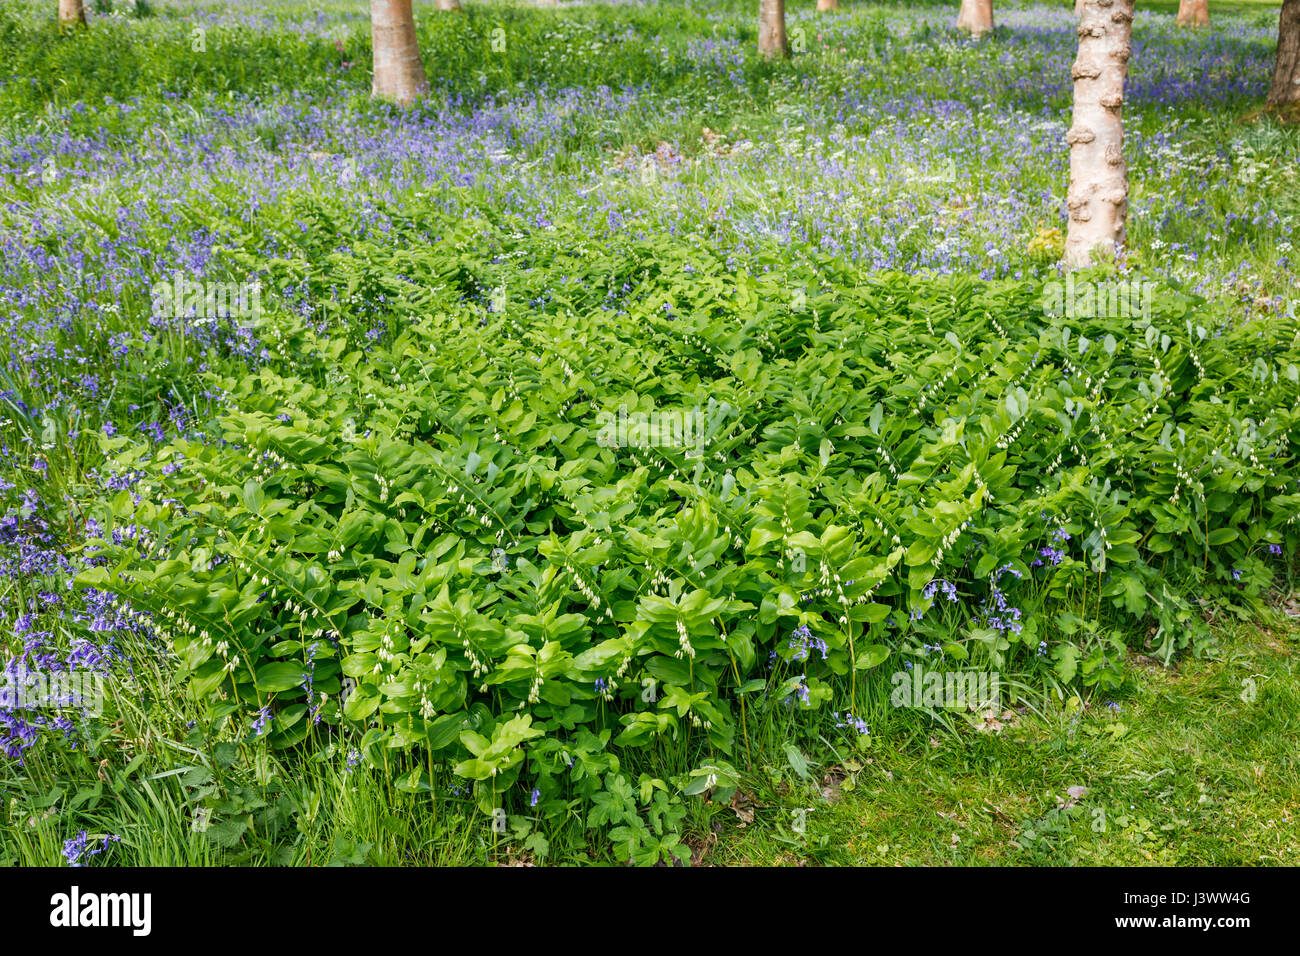 La floraison du printemps : fleurs sauvages du sceau de Salomon (Polygonatum) croissant avec le printemps bluebells de Woodland, West Sussex, au sud-est de l'Angleterre, Royaume-Uni Banque D'Images